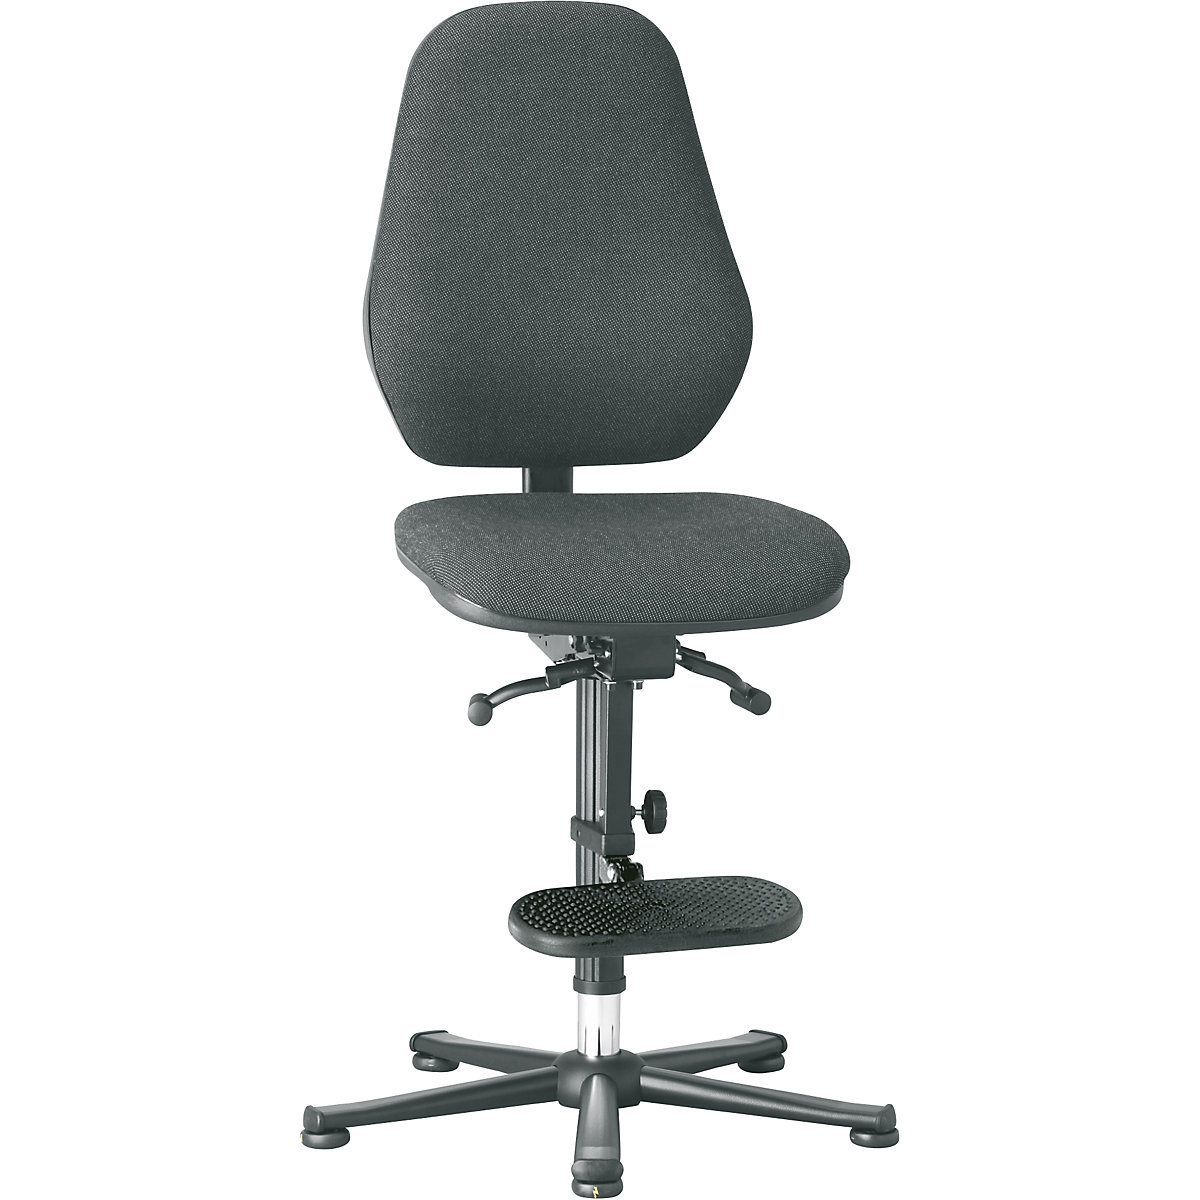 Pracovní otočná židle – bimos, s ochranou ESD, se synchronní mechanikou a regulací hmotnosti, patky, pomůcka pro výstup, černý látkový potah-10